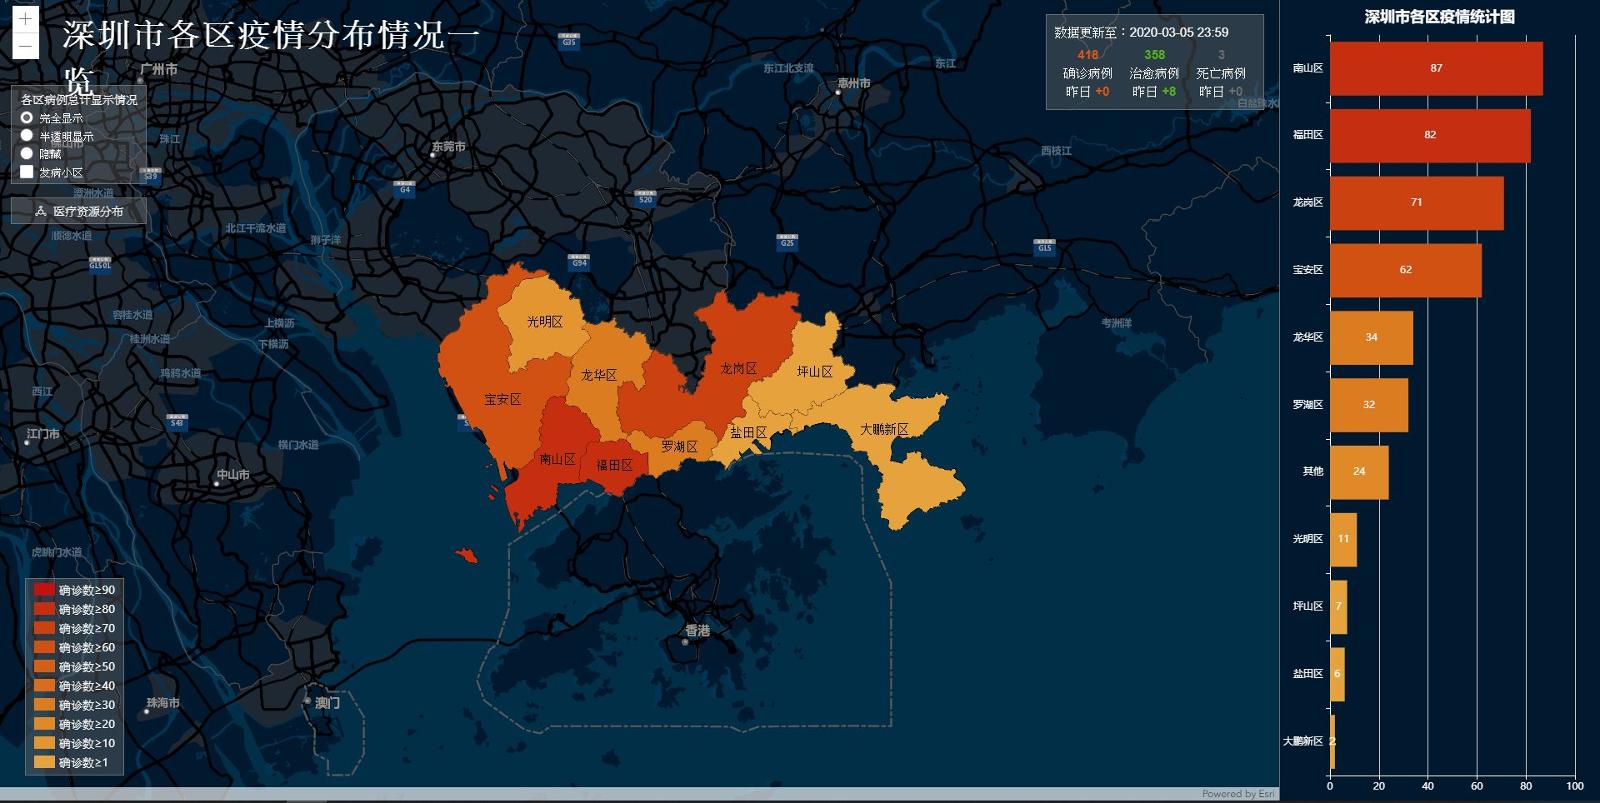 مدیریت بحران کرونا با سامانه اطلاعات جغرافیایی (GIS)